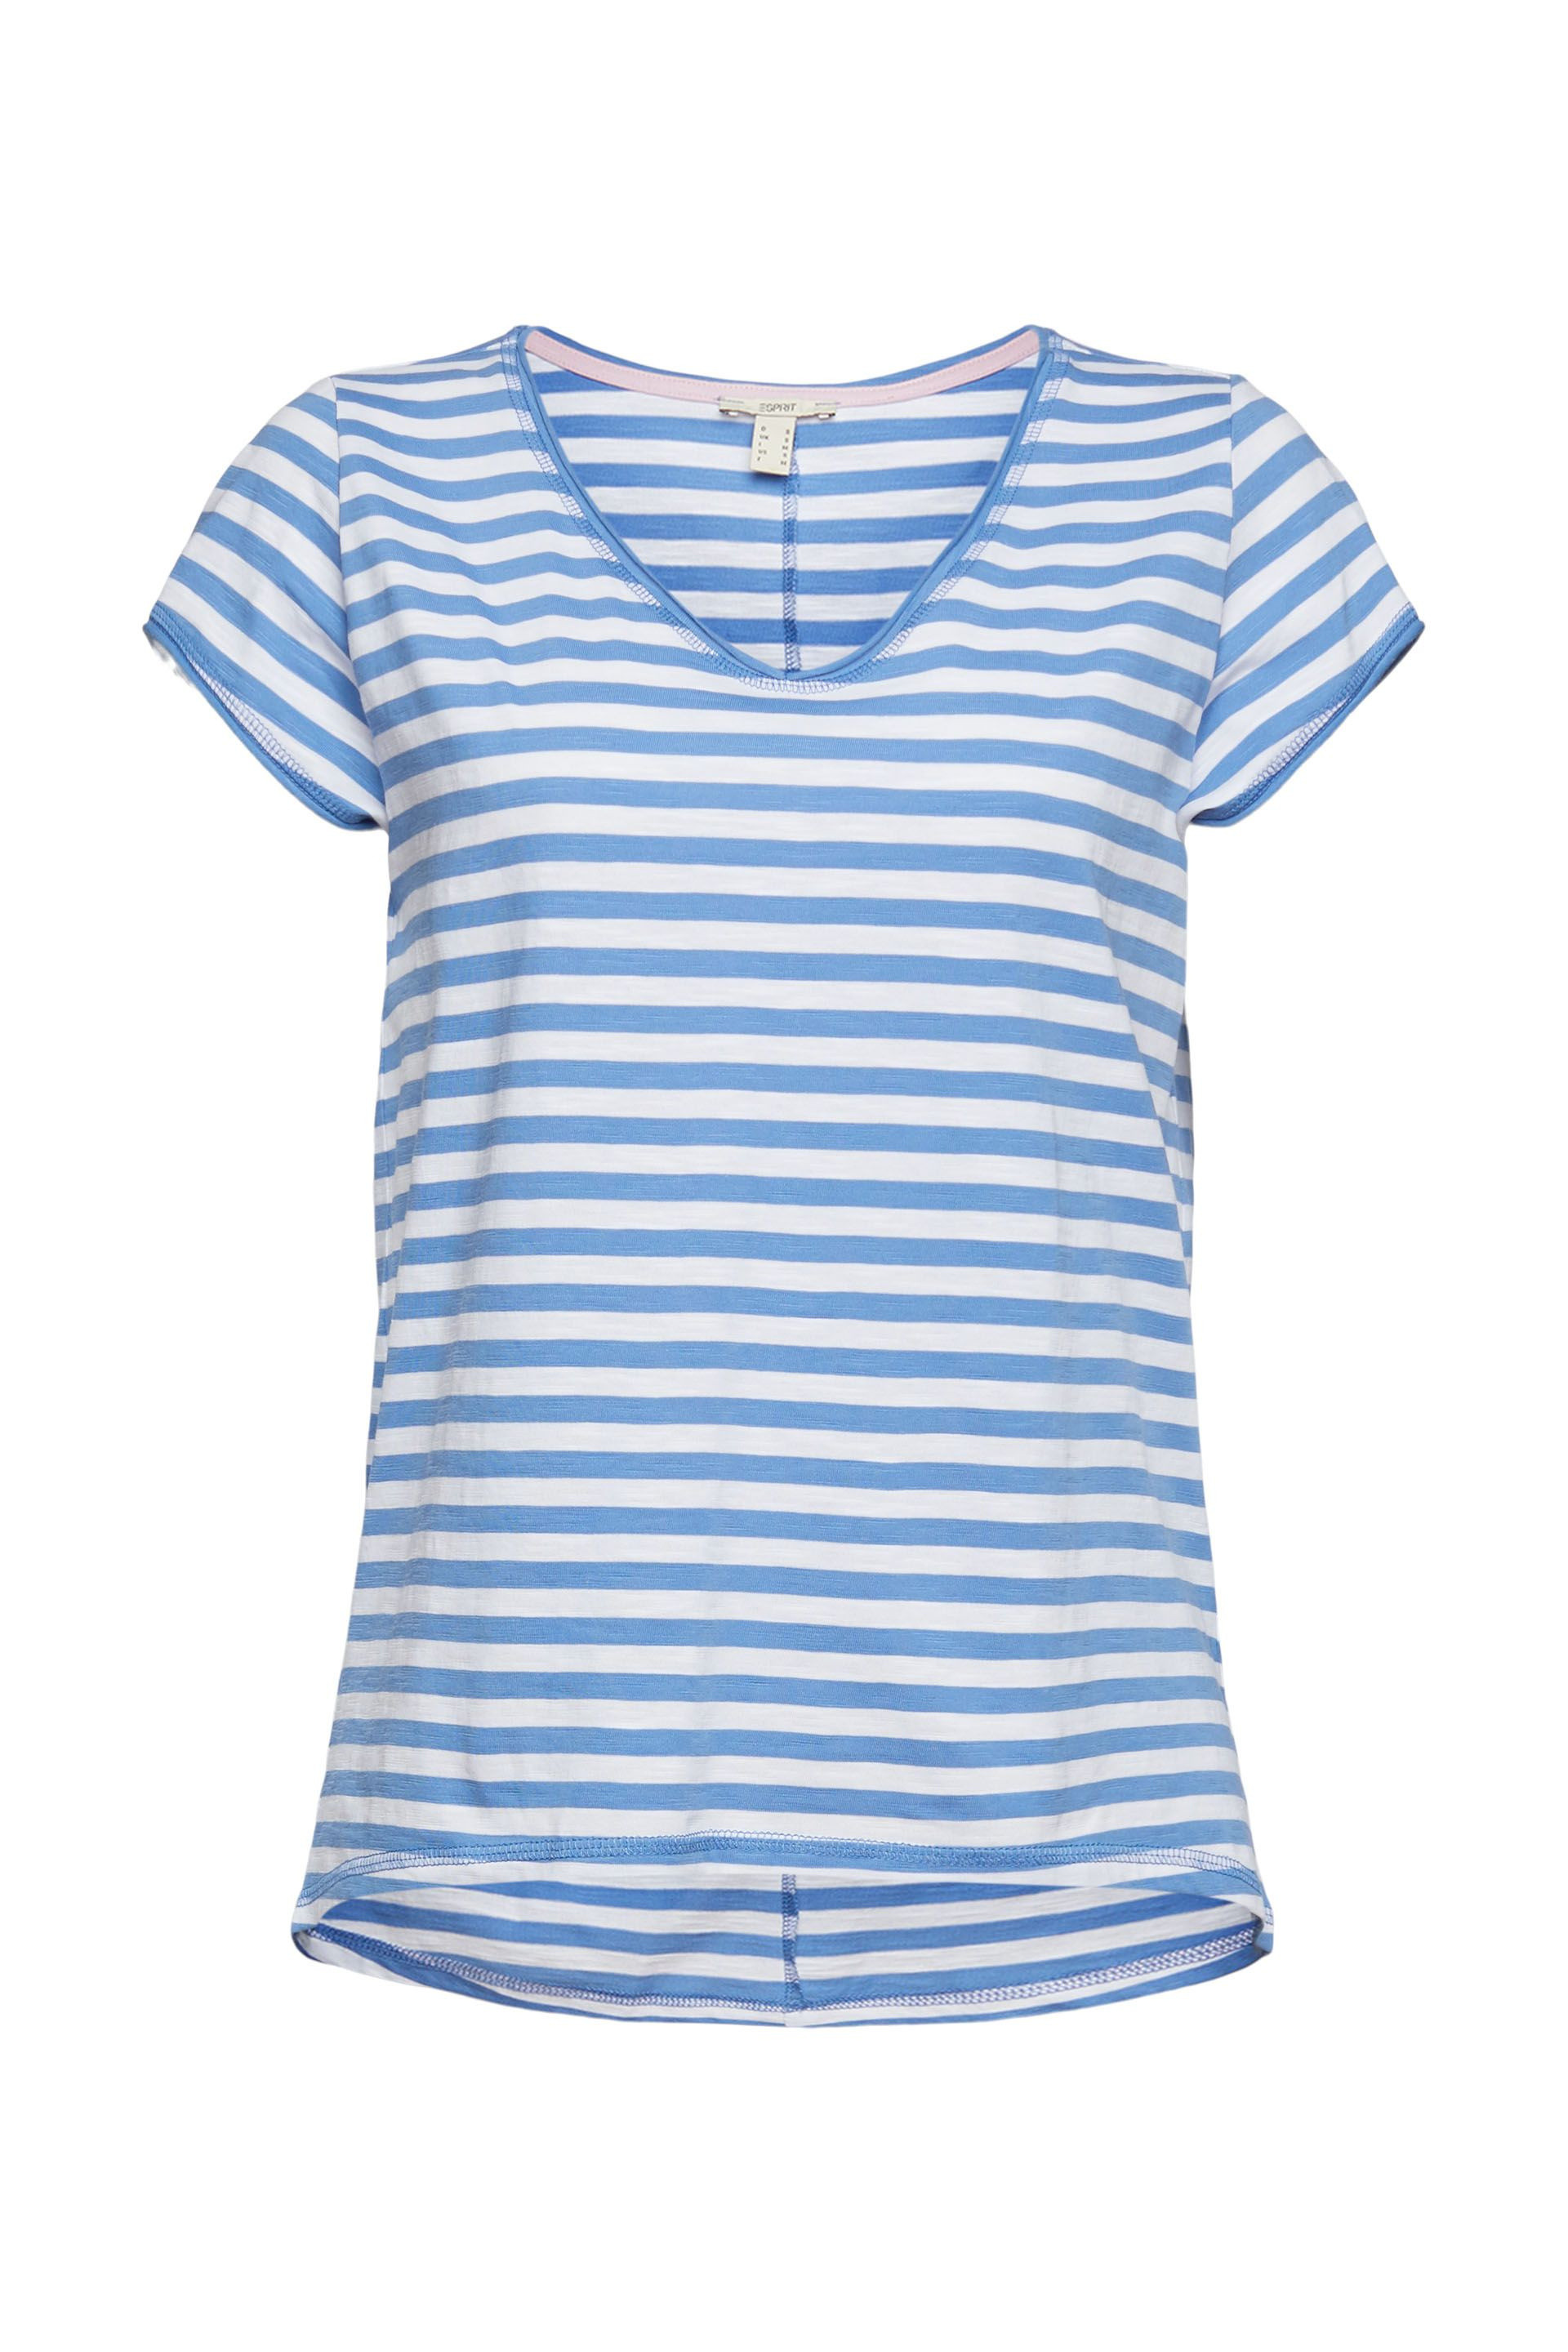 Striped T-shirt, Light Blue, large image number 0